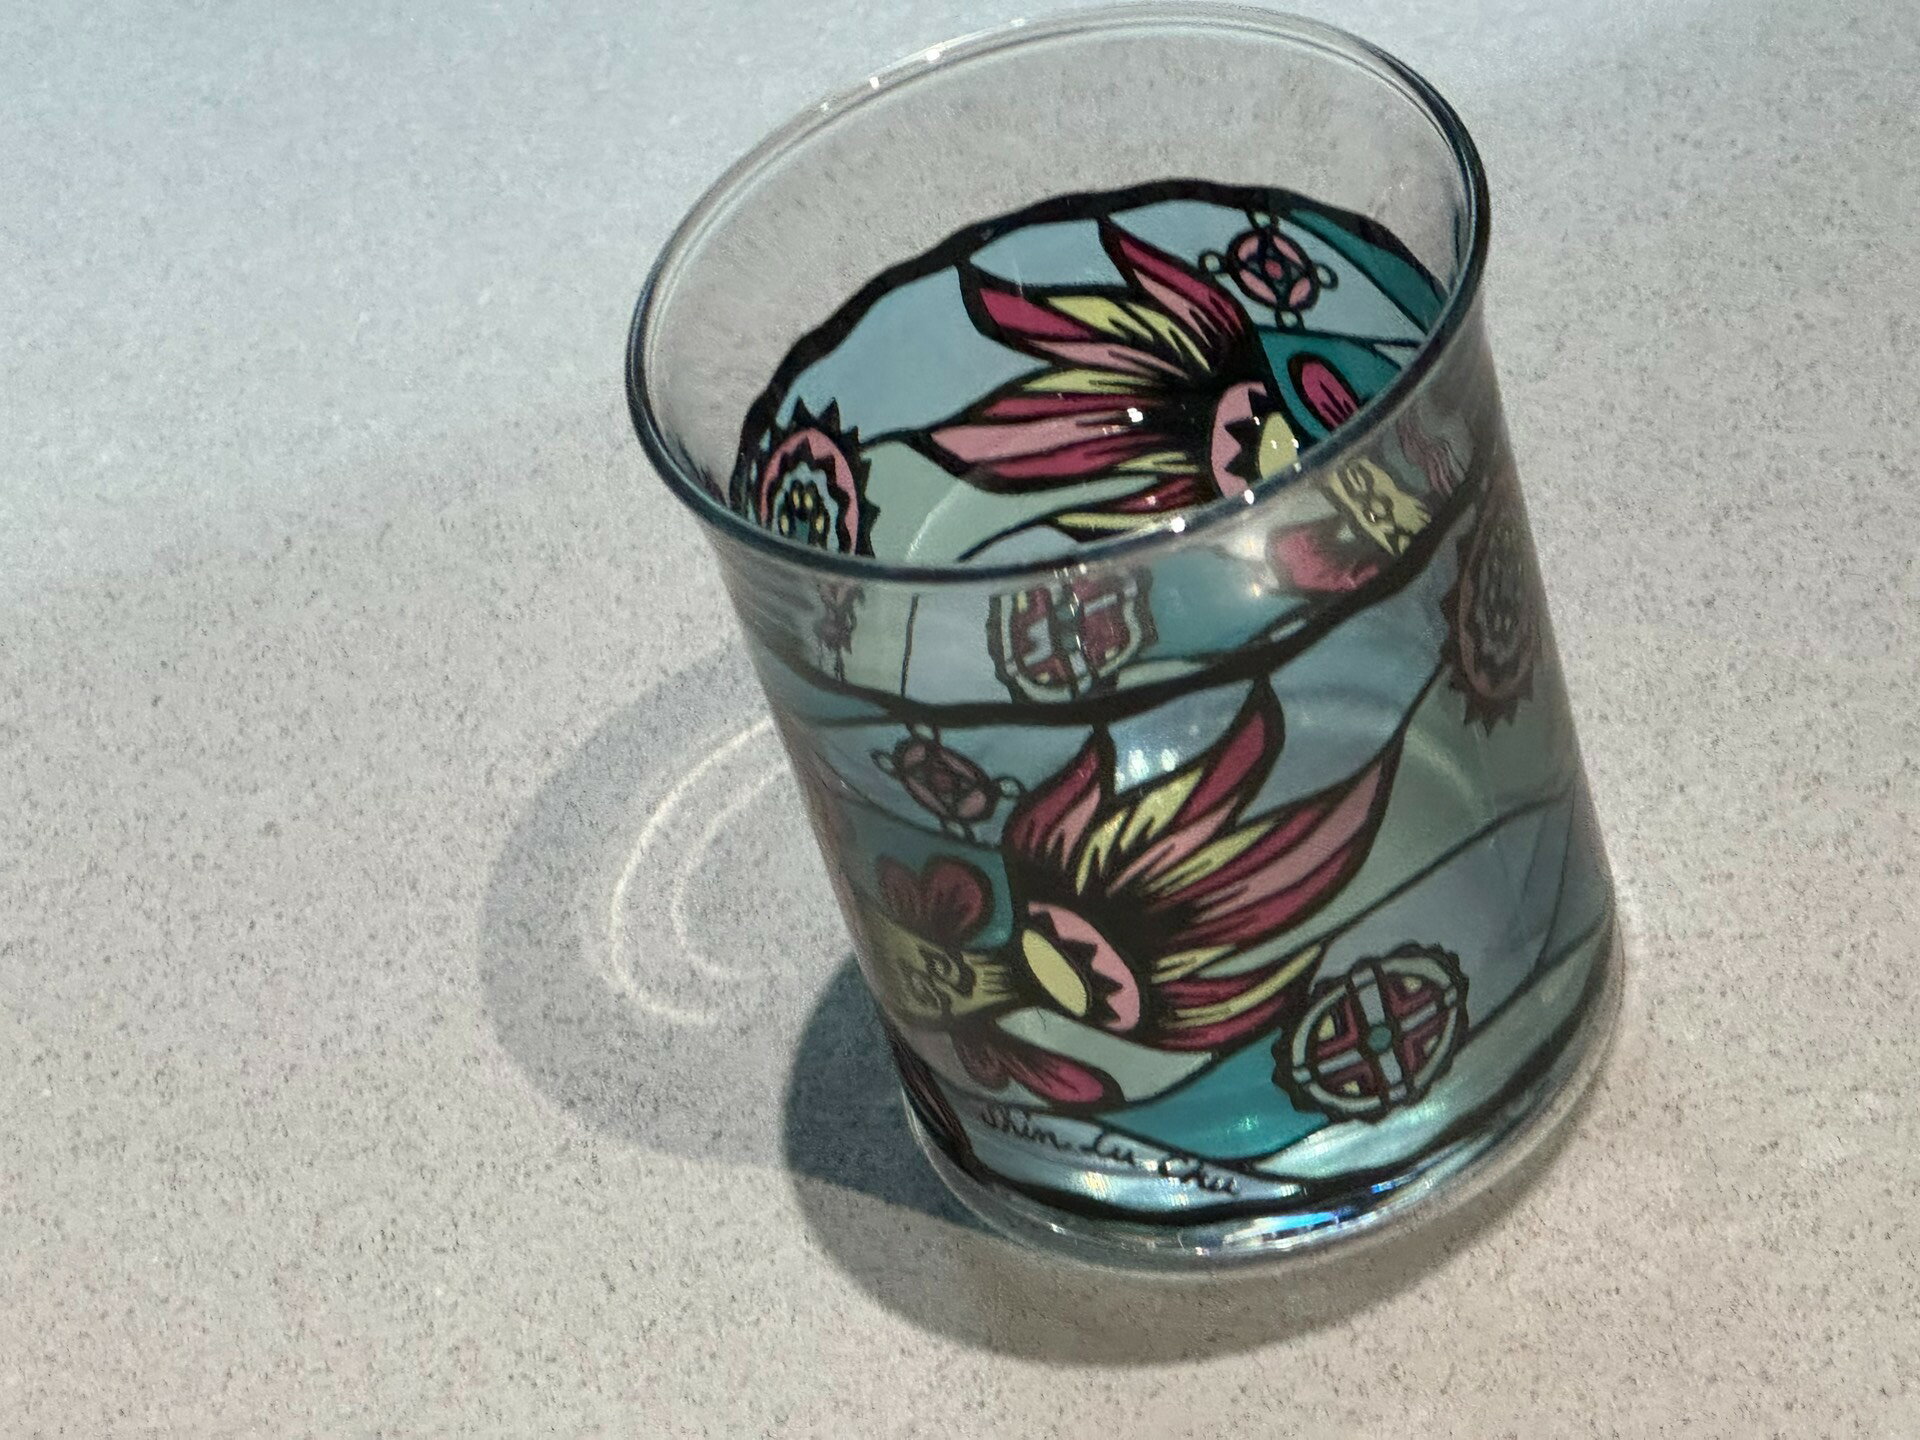 日本產玻璃小酒杯水杯果汁杯清酒杯梅子酒杯。尺寸6左右吧 教堂